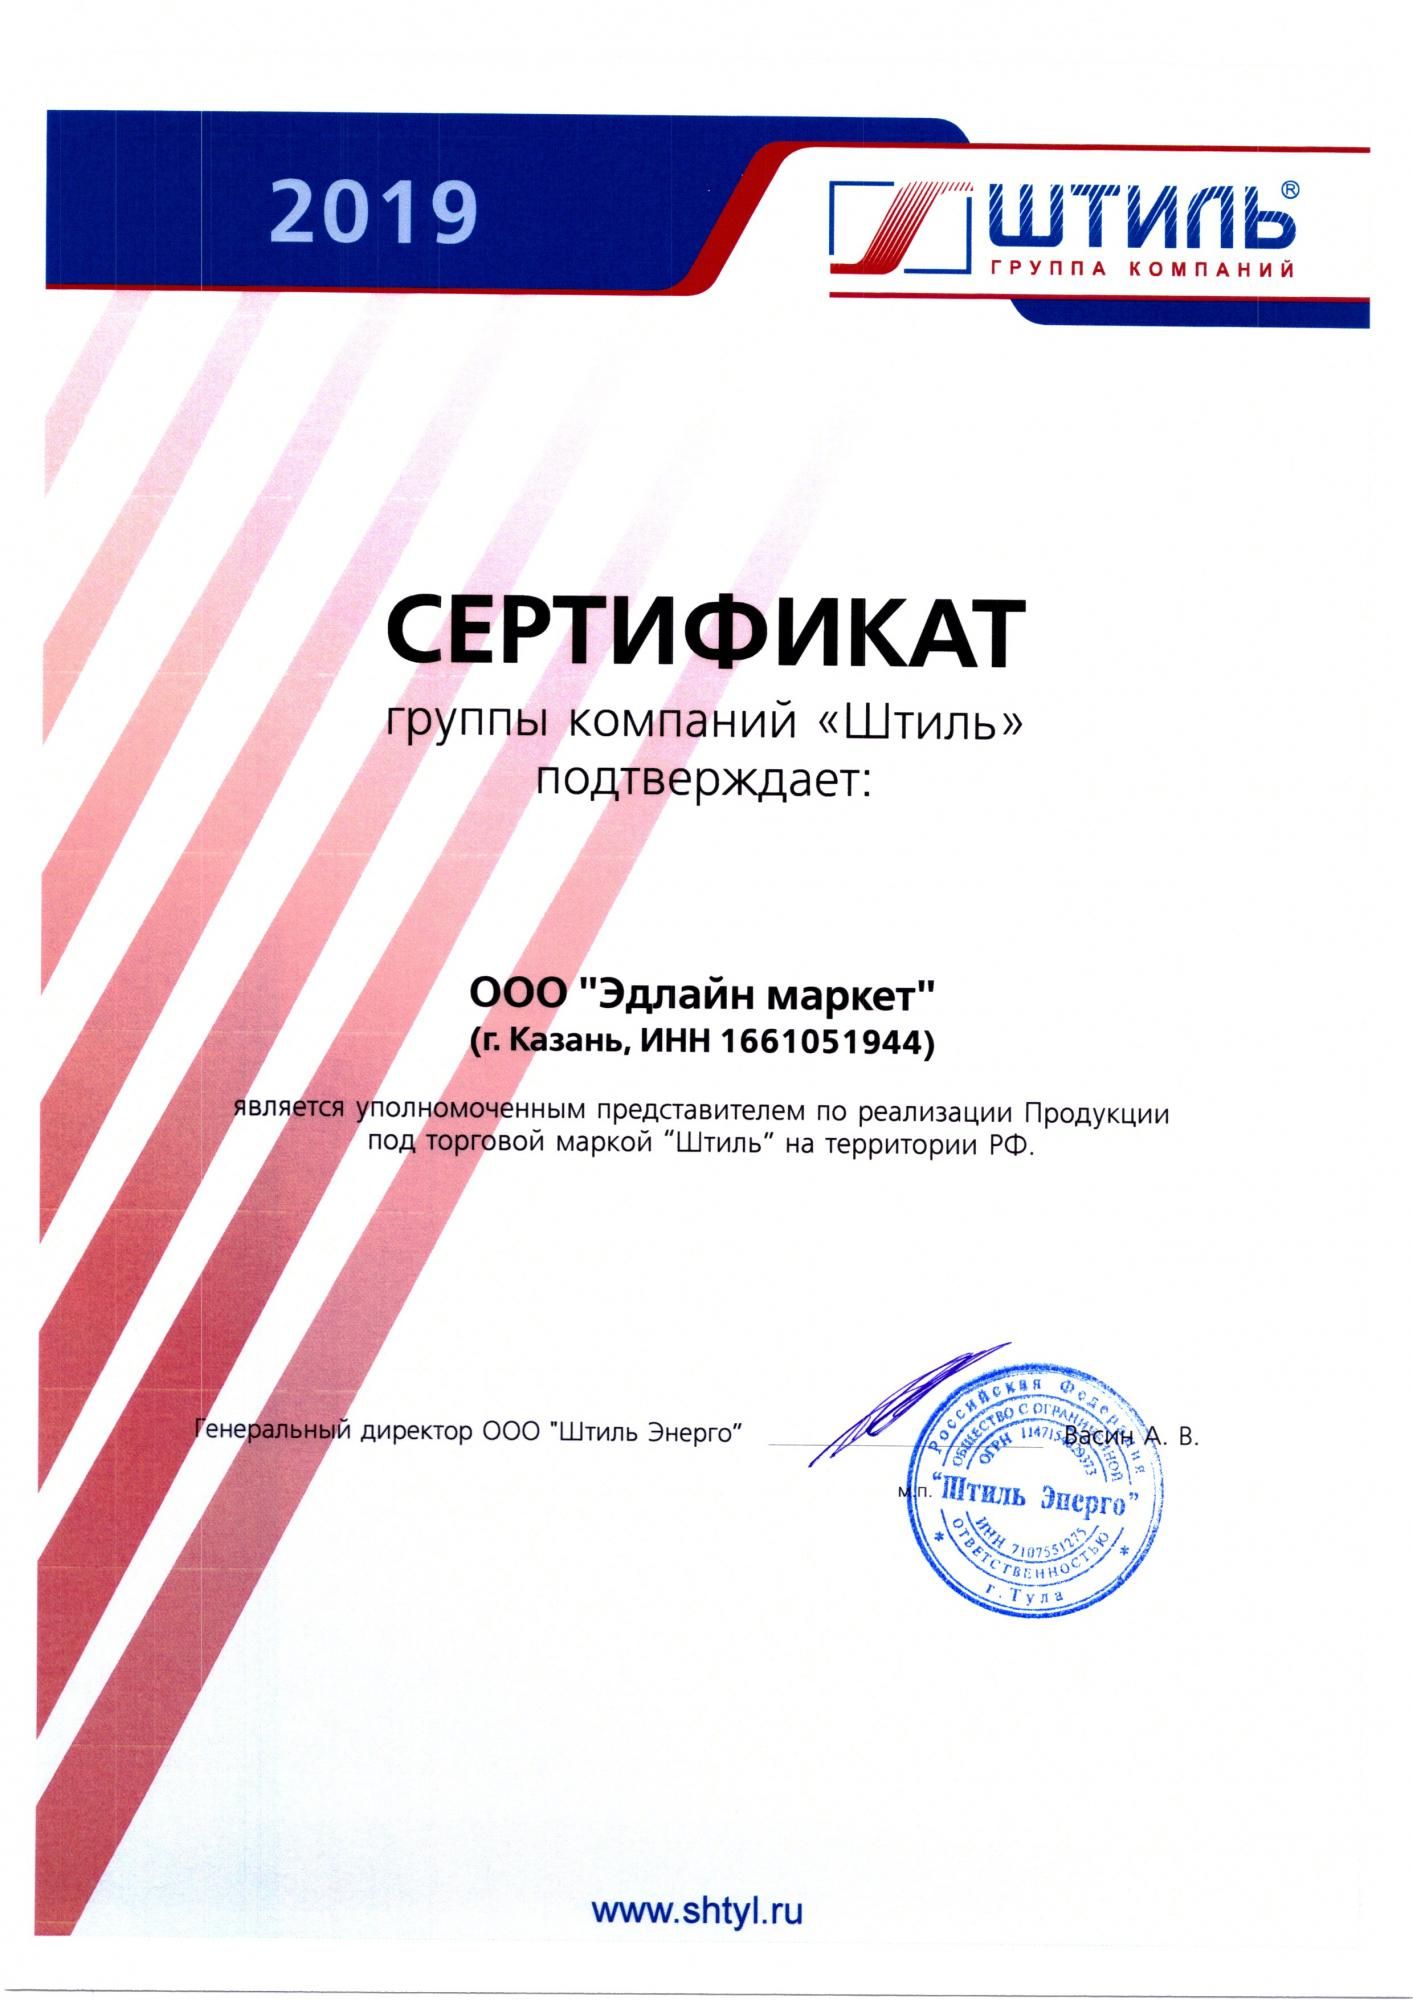 Сертификат от группы компаний "Штиль"